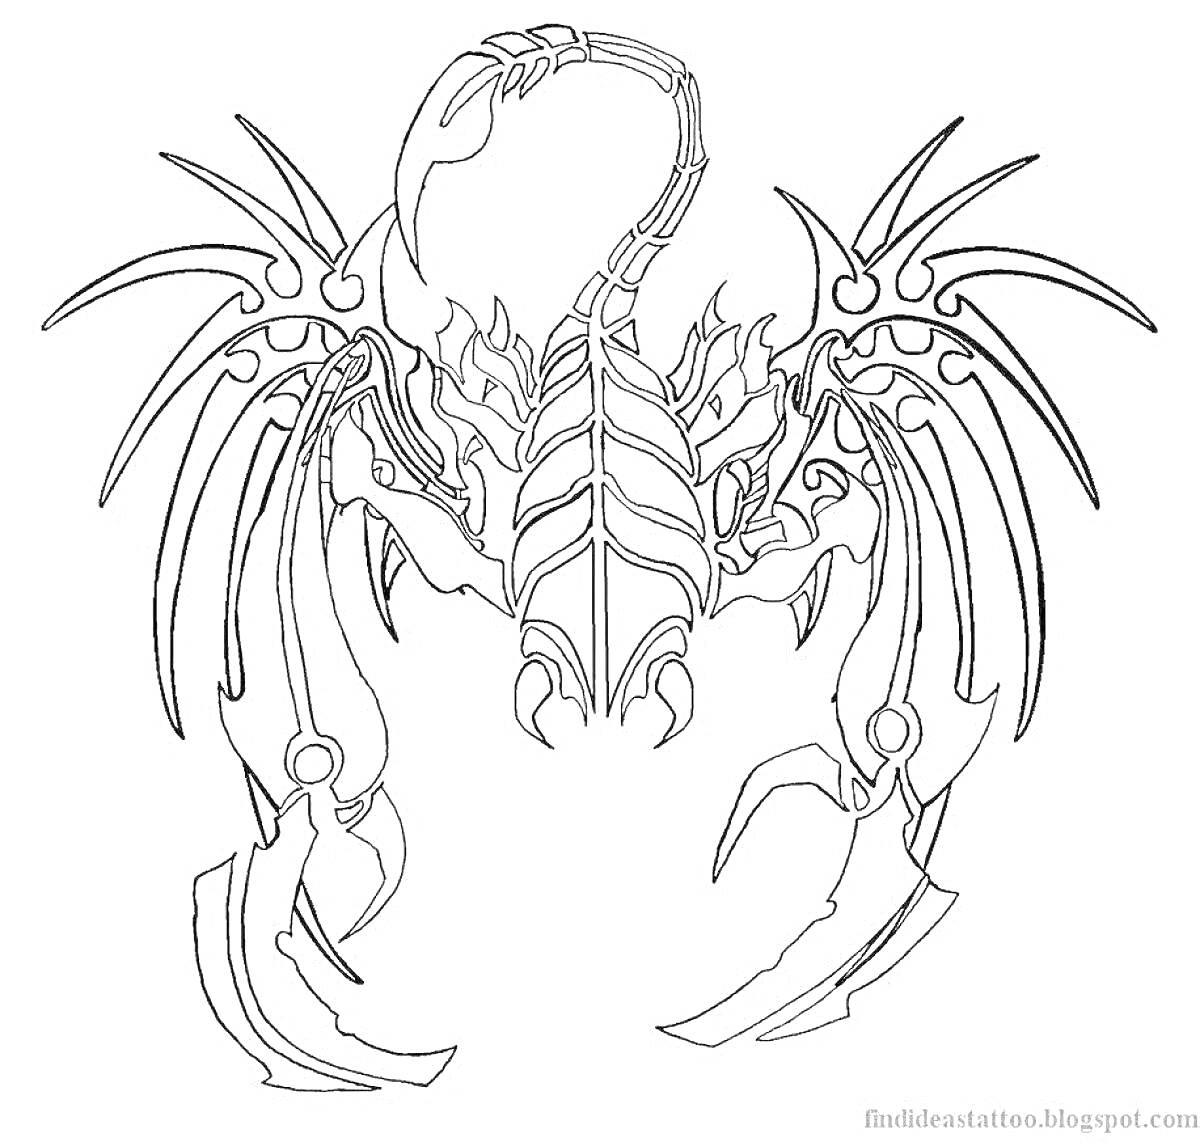 Раскраска Скорпион с декоративными элементами и изогнутым хвостом